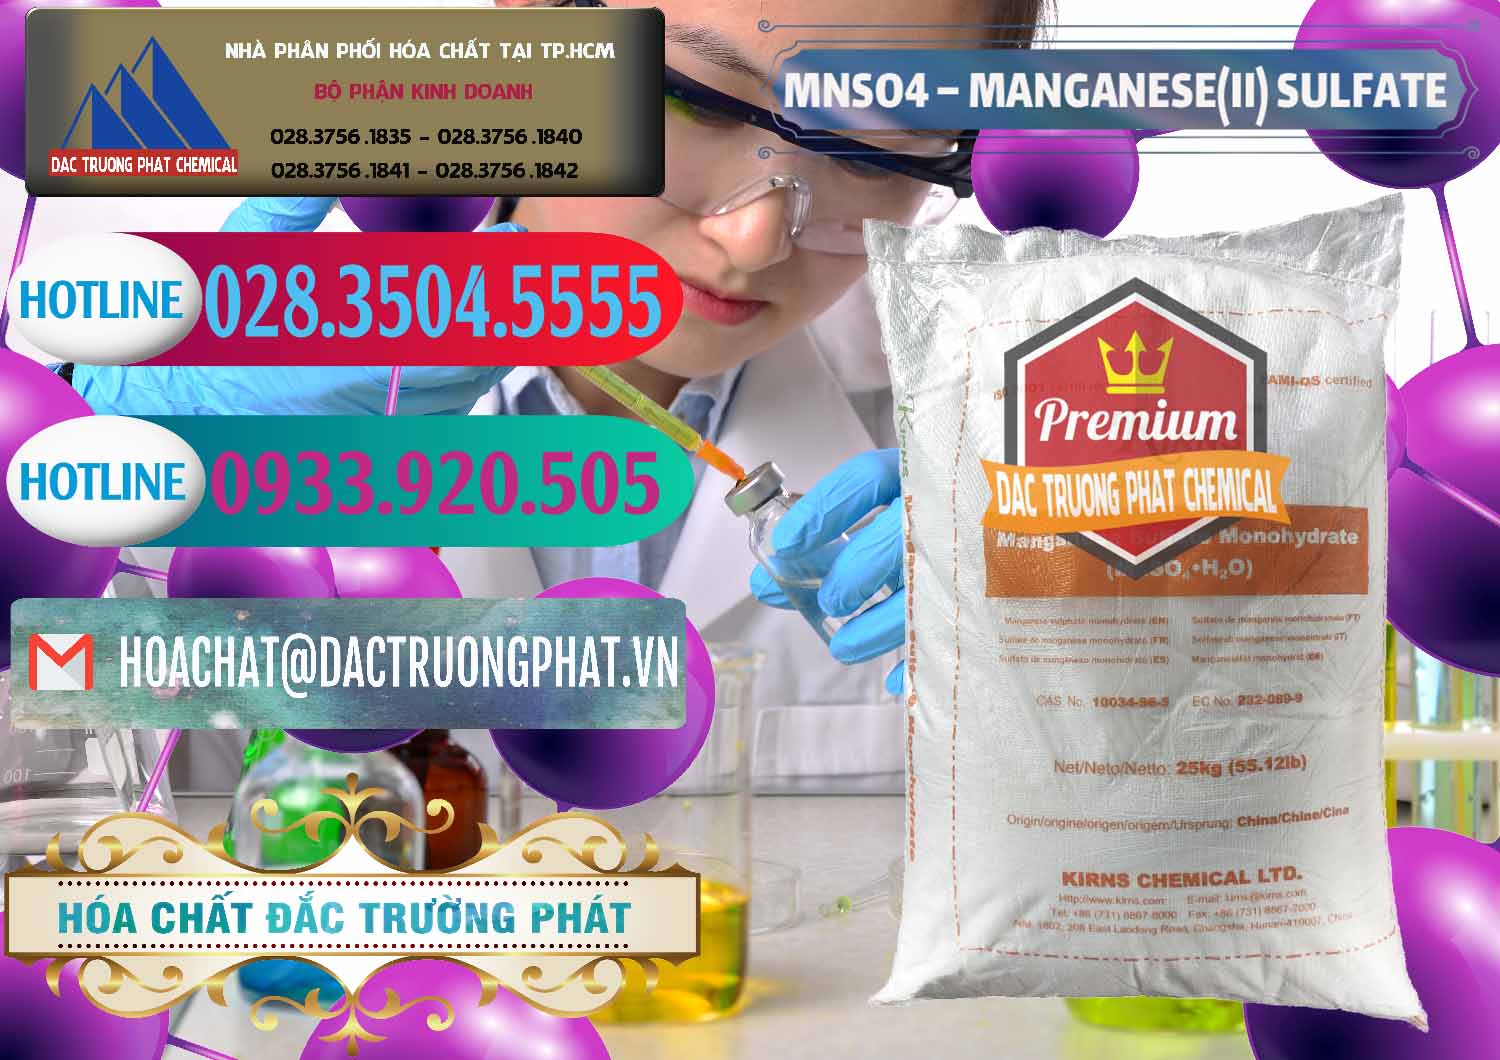 Đơn vị chuyên nhập khẩu và bán MNSO4 – Manganese (II) Sulfate Kirns Trung Quốc China - 0095 - Đơn vị chuyên cung cấp - nhập khẩu hóa chất tại TP.HCM - truongphat.vn